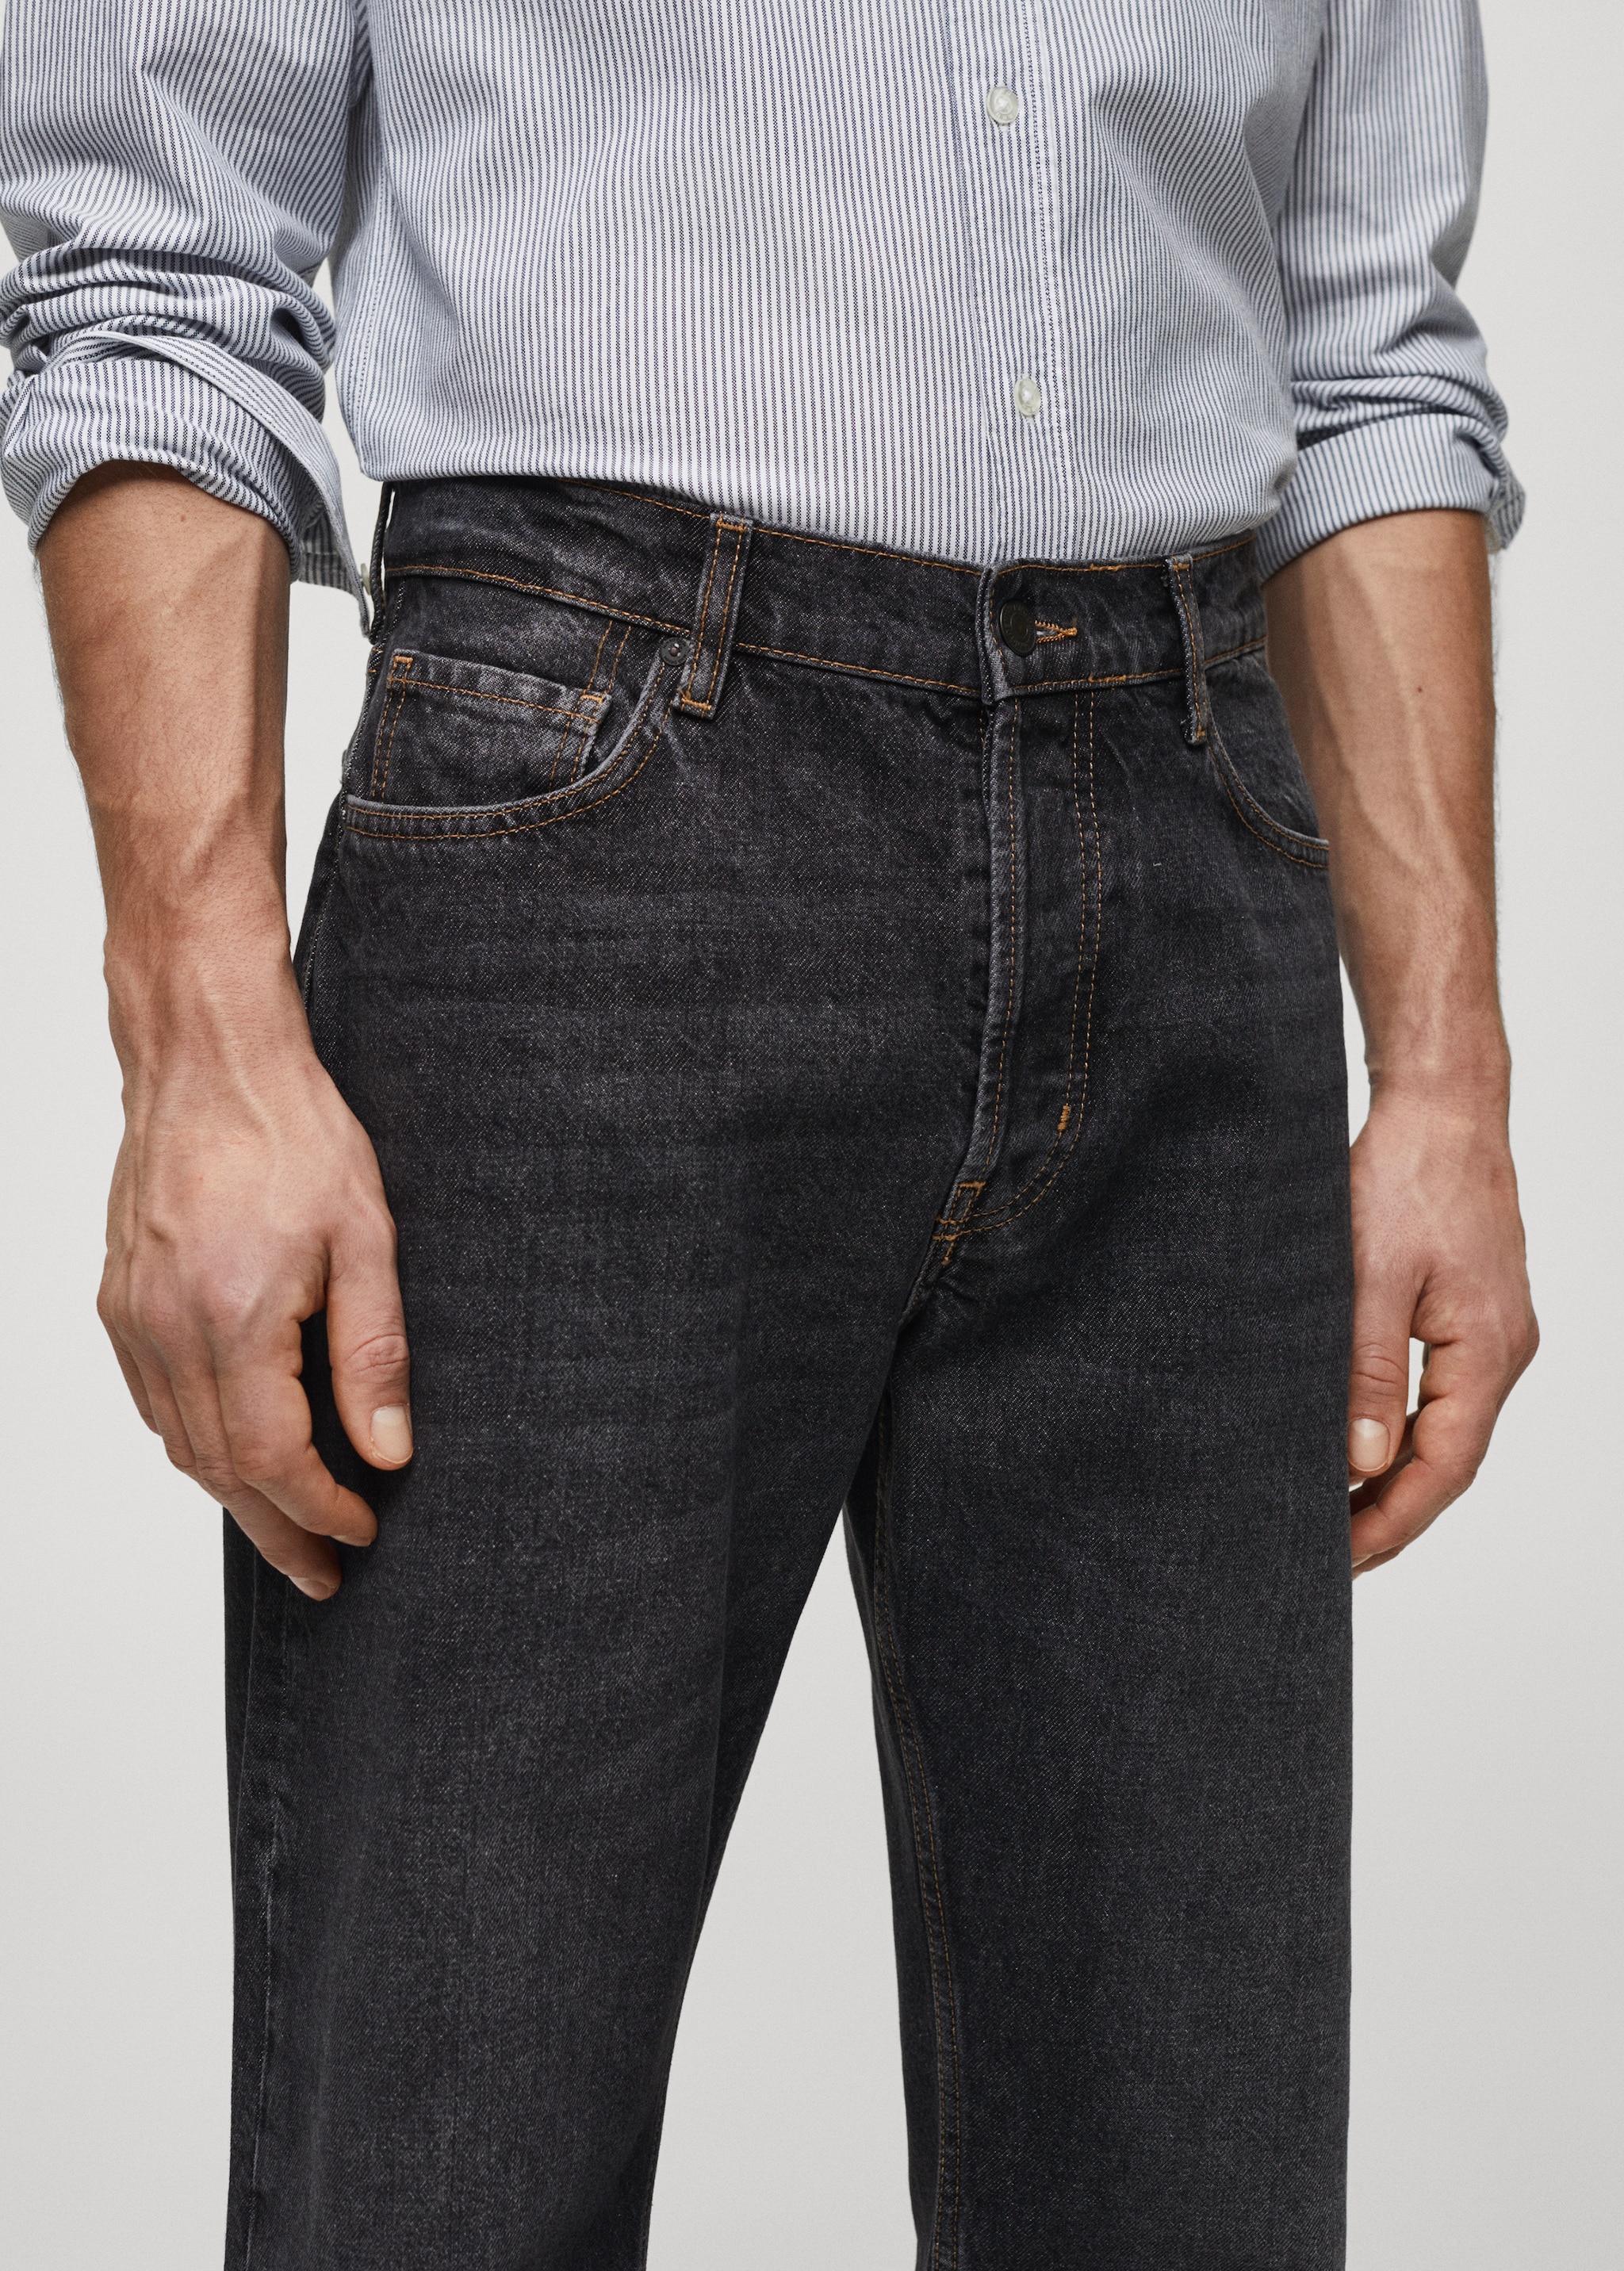 Jeans relaxed fit lavado oscuro - Detalle del artículo 1